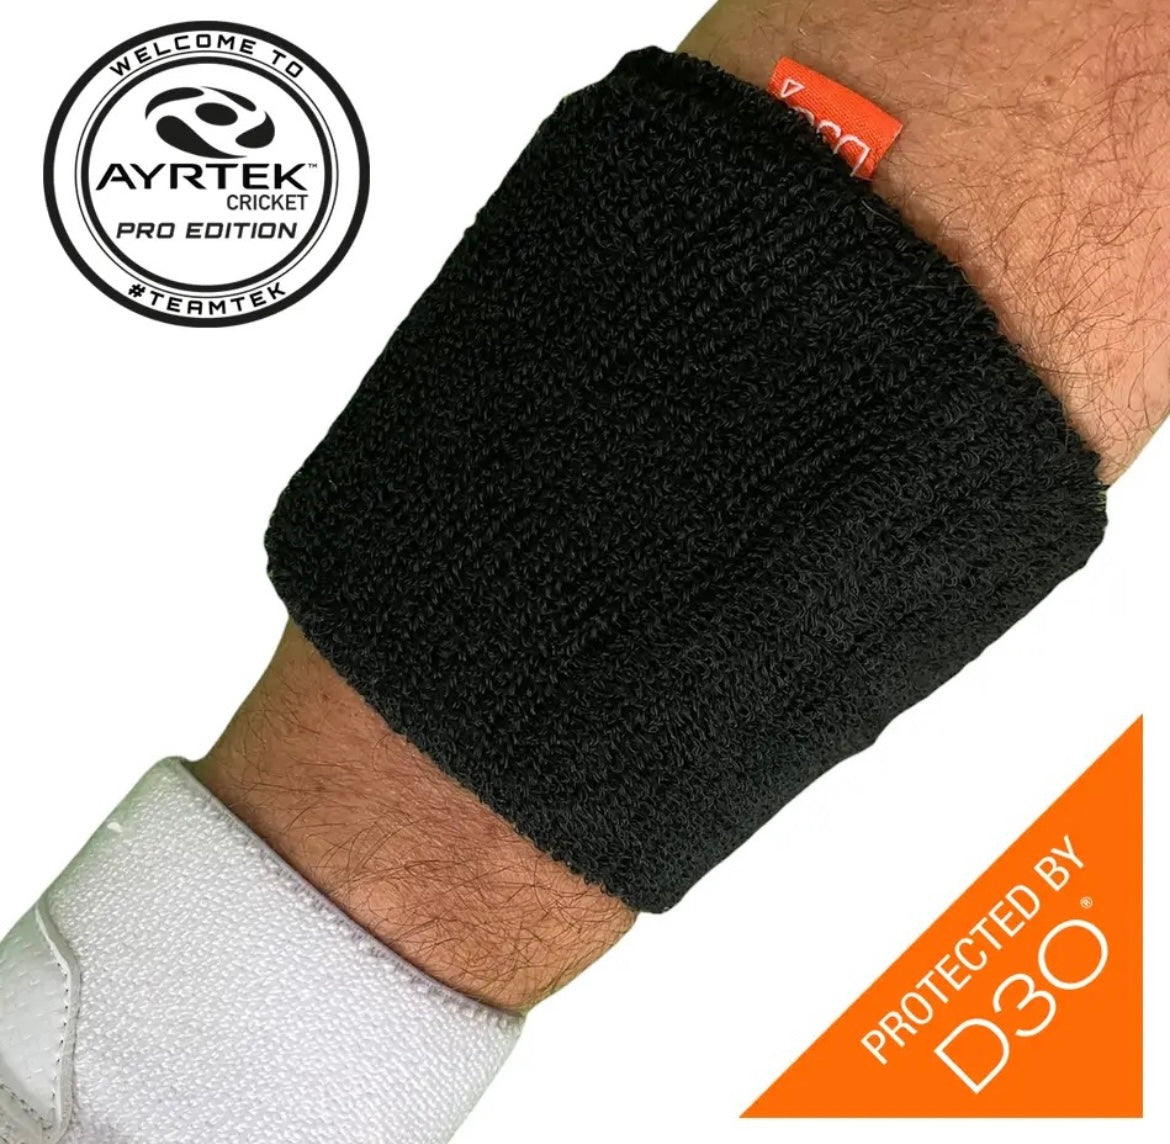 Ayrtek Hybrid Sweatband- Stubby PRO - The Cricket Store